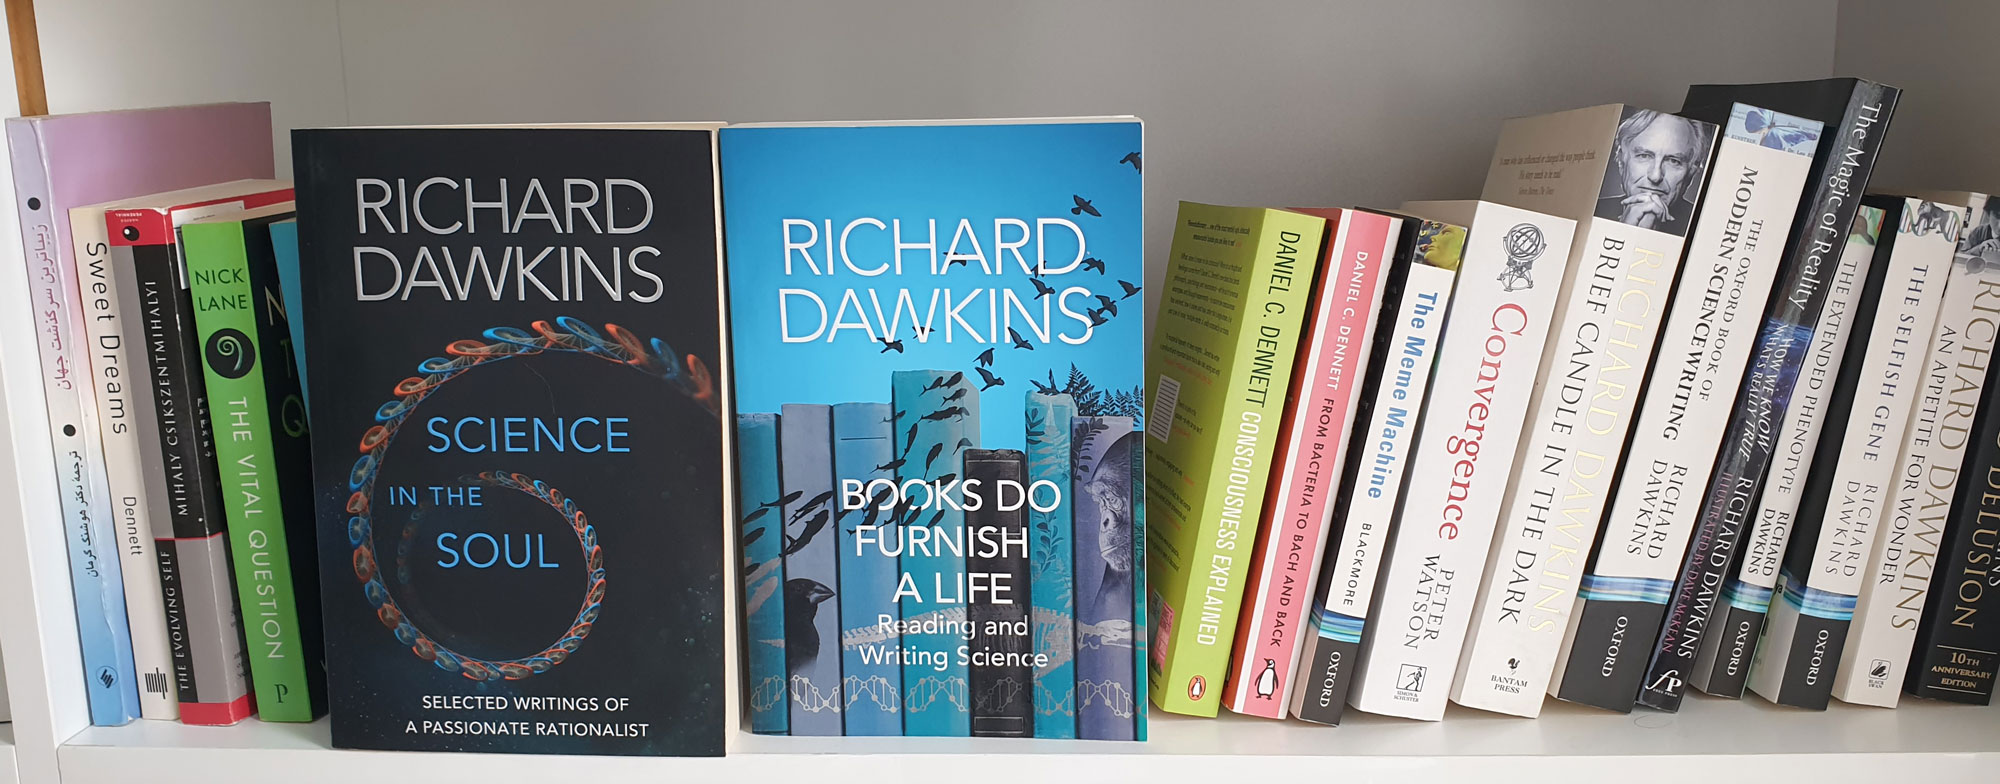 کتابهای ریچارد داوکینز